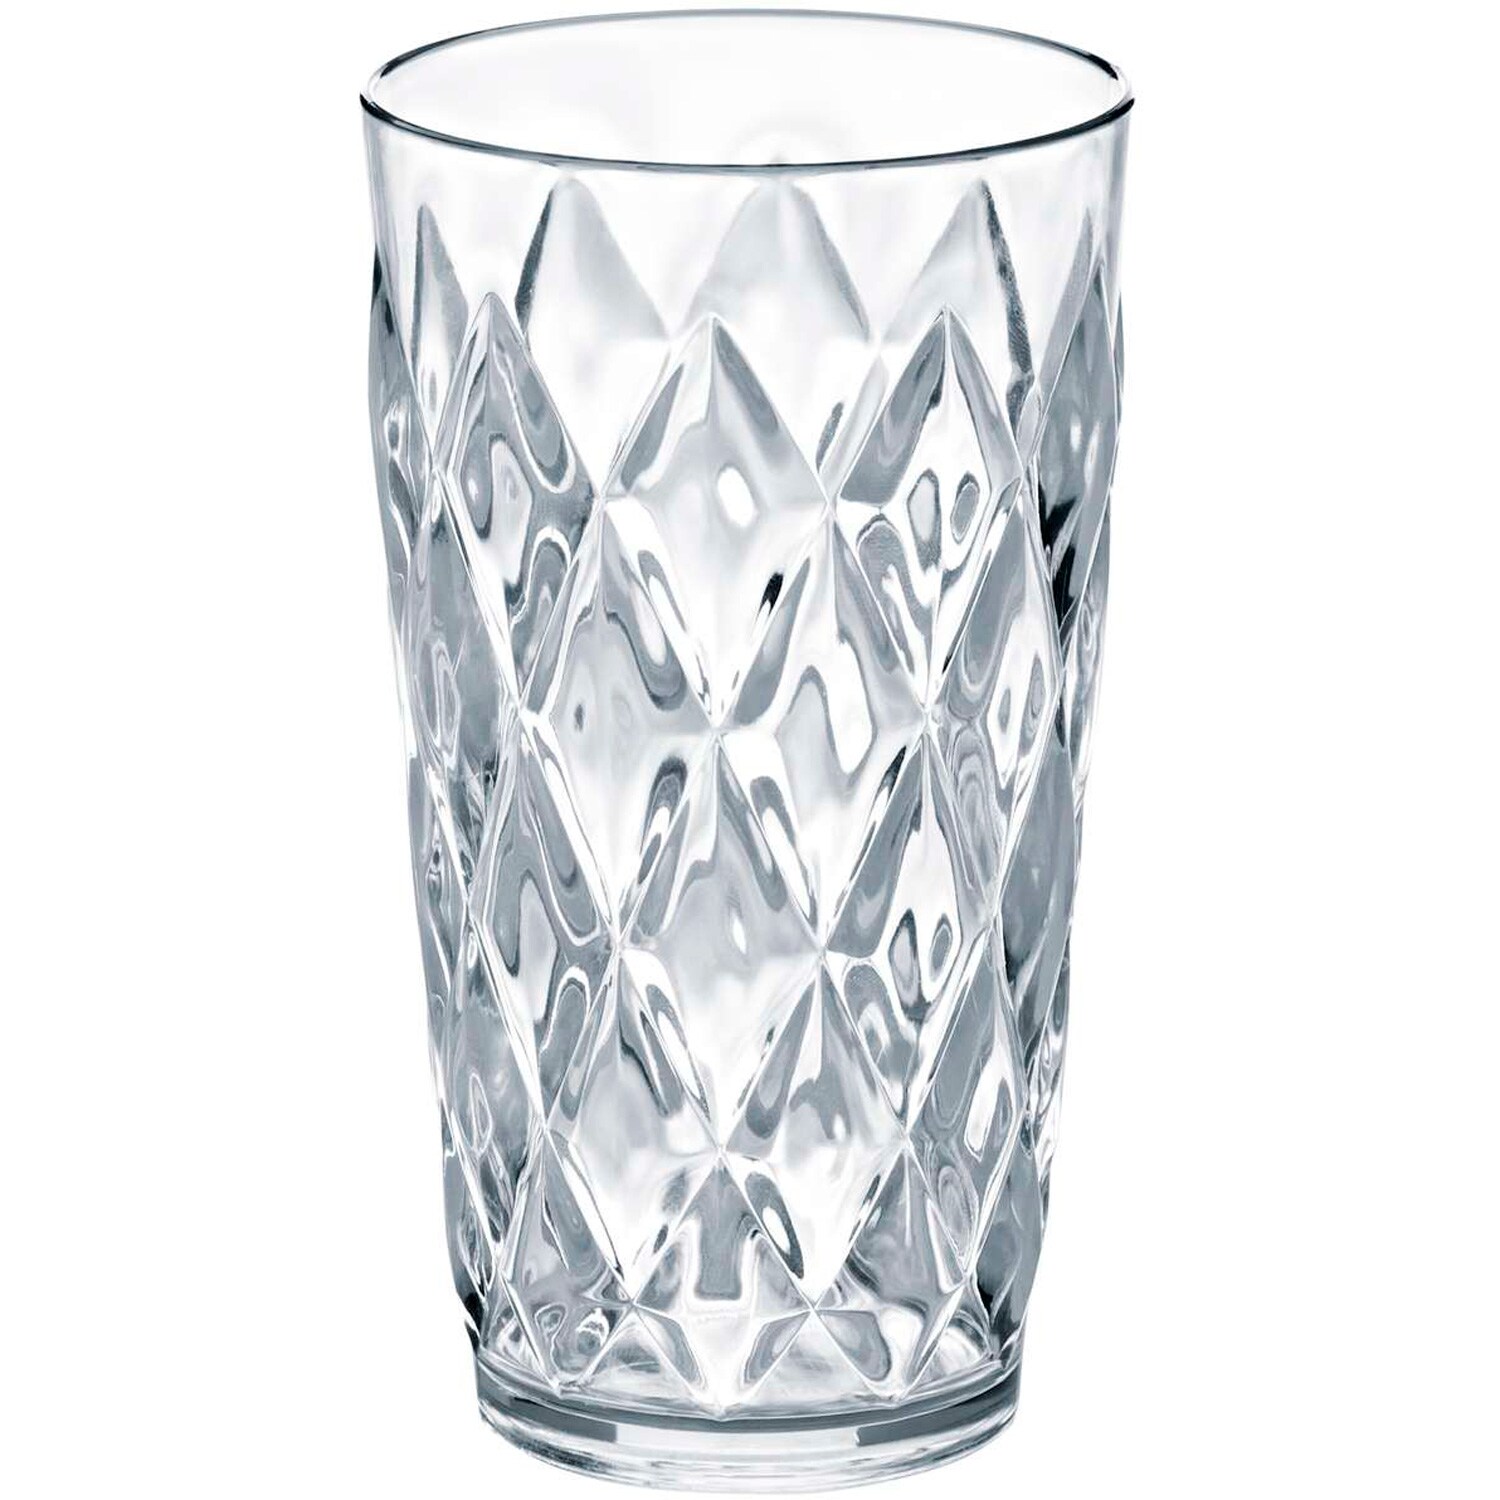 https://royaldesign.com/image/2/koziol-crystal-glass-l-0